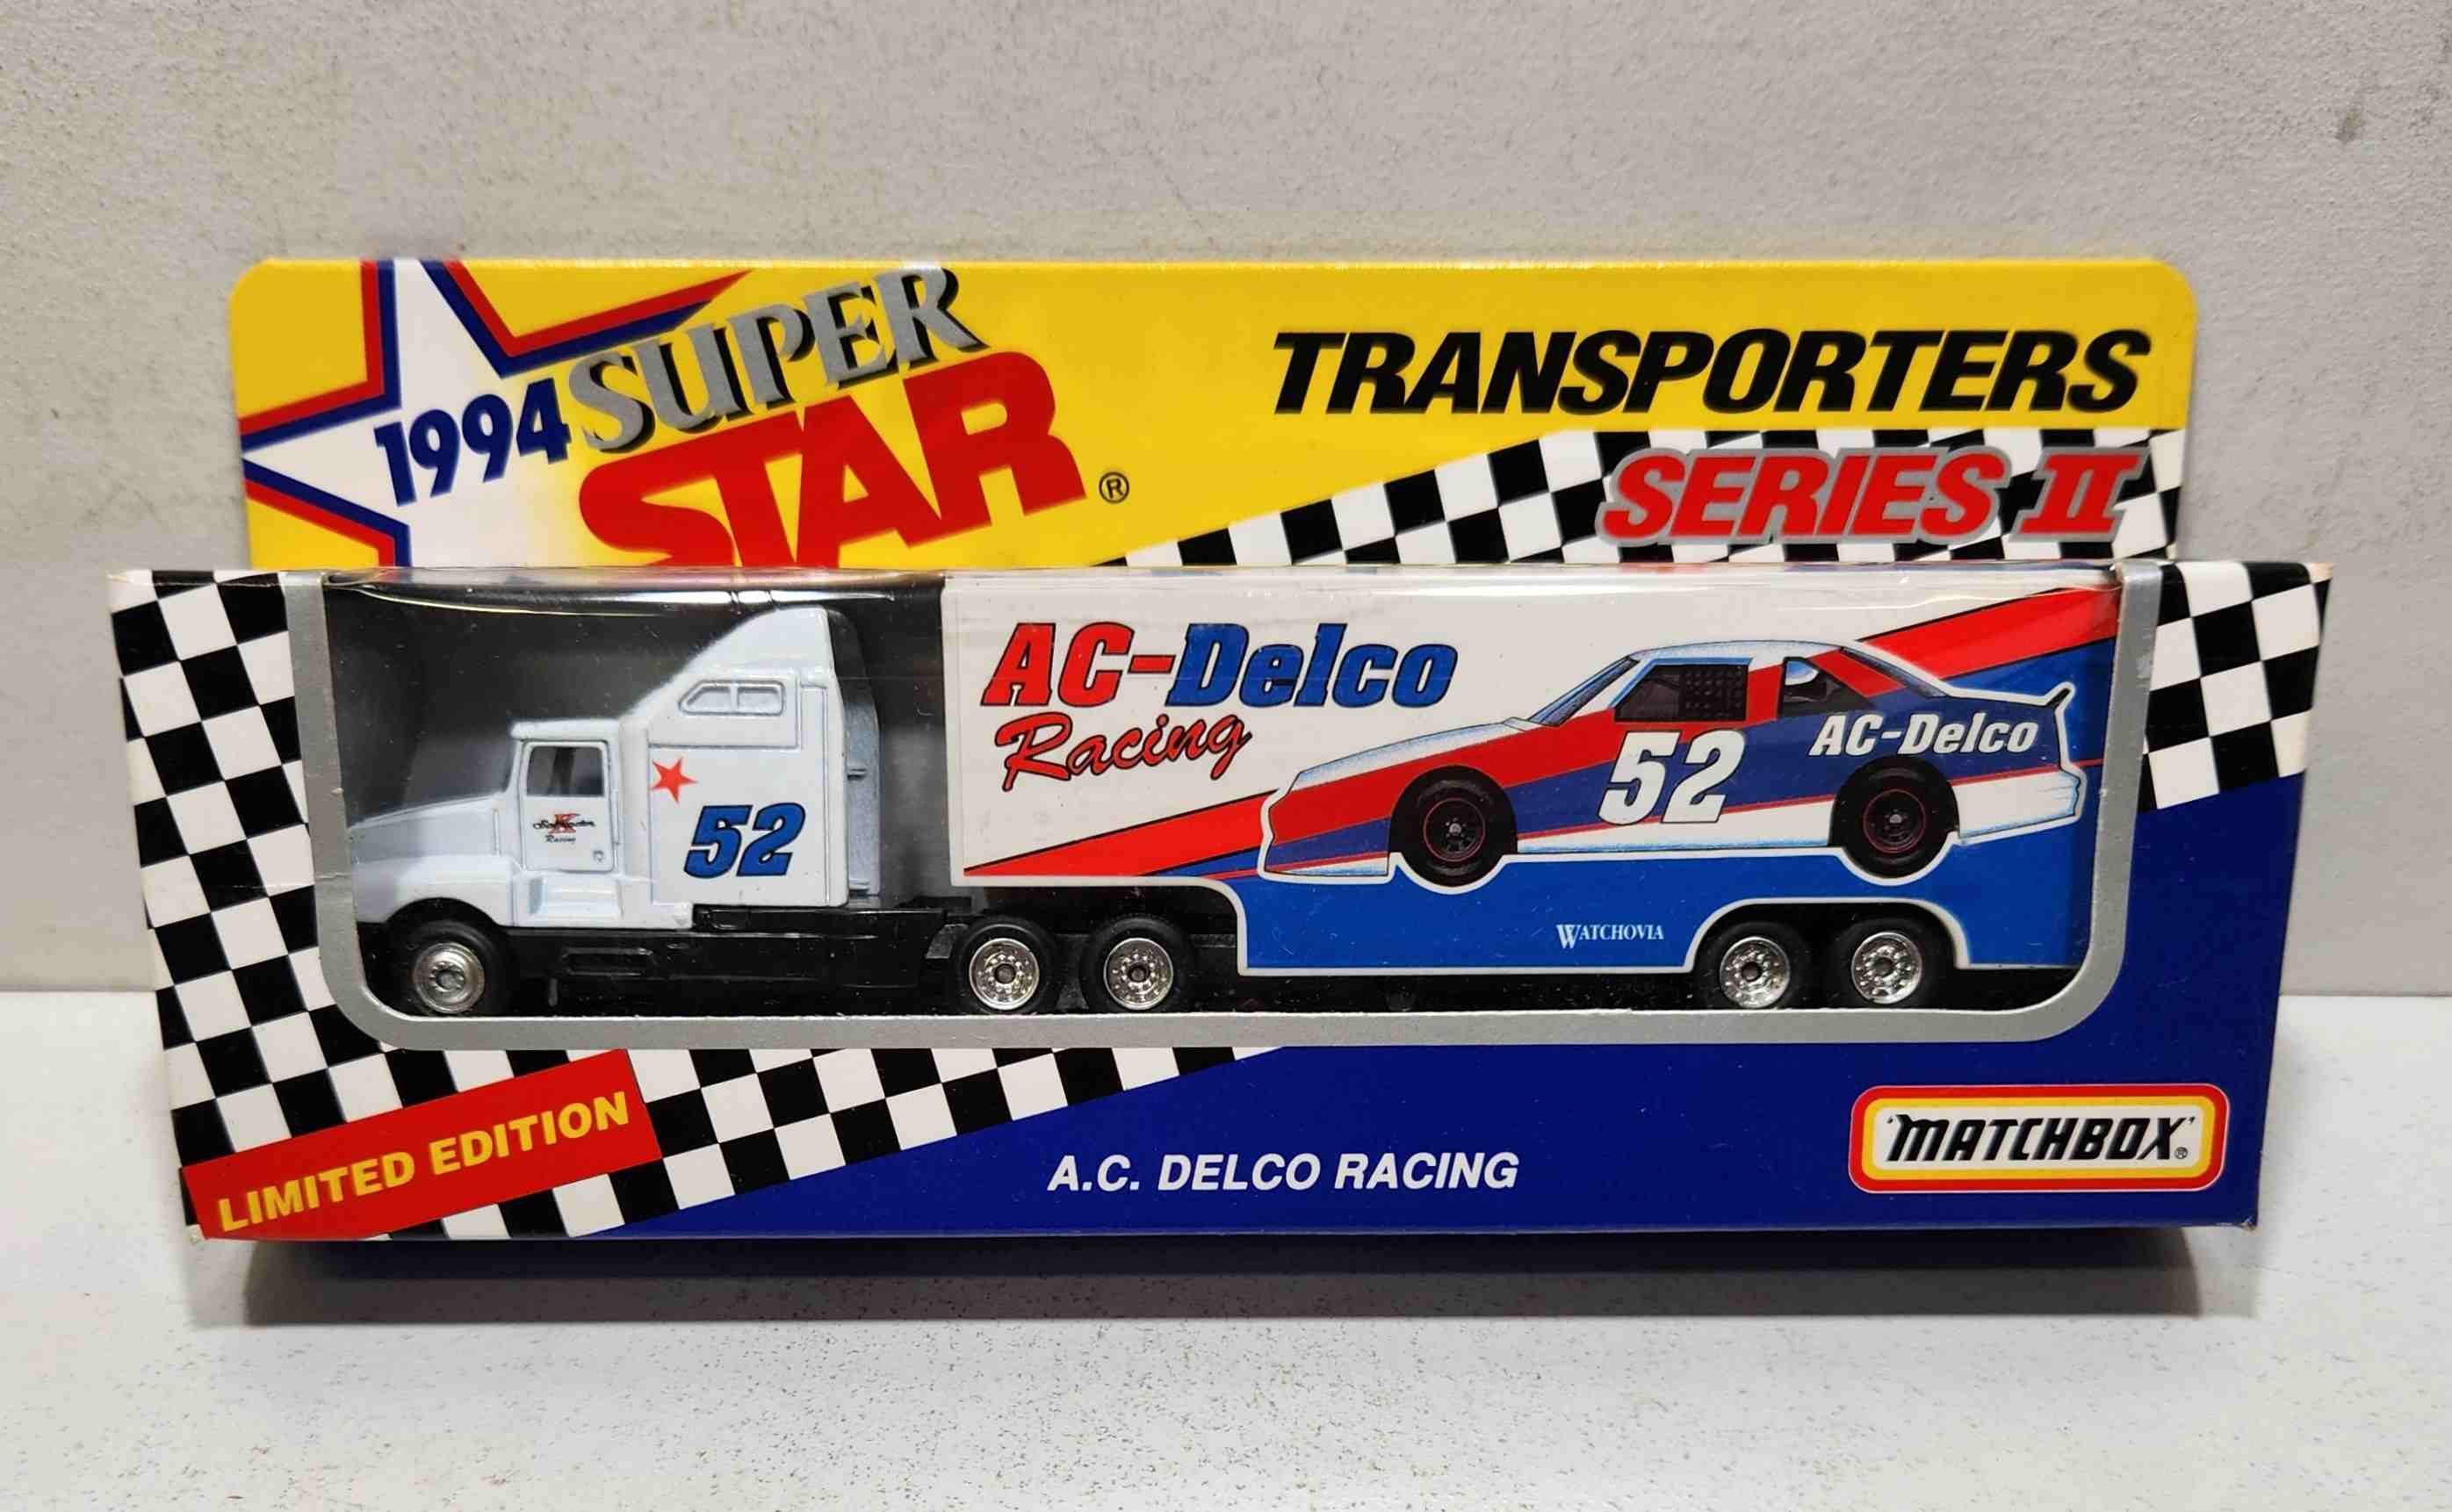 1994 Ken Schrader 1/80th AC Delco "Busch Series" Transporter